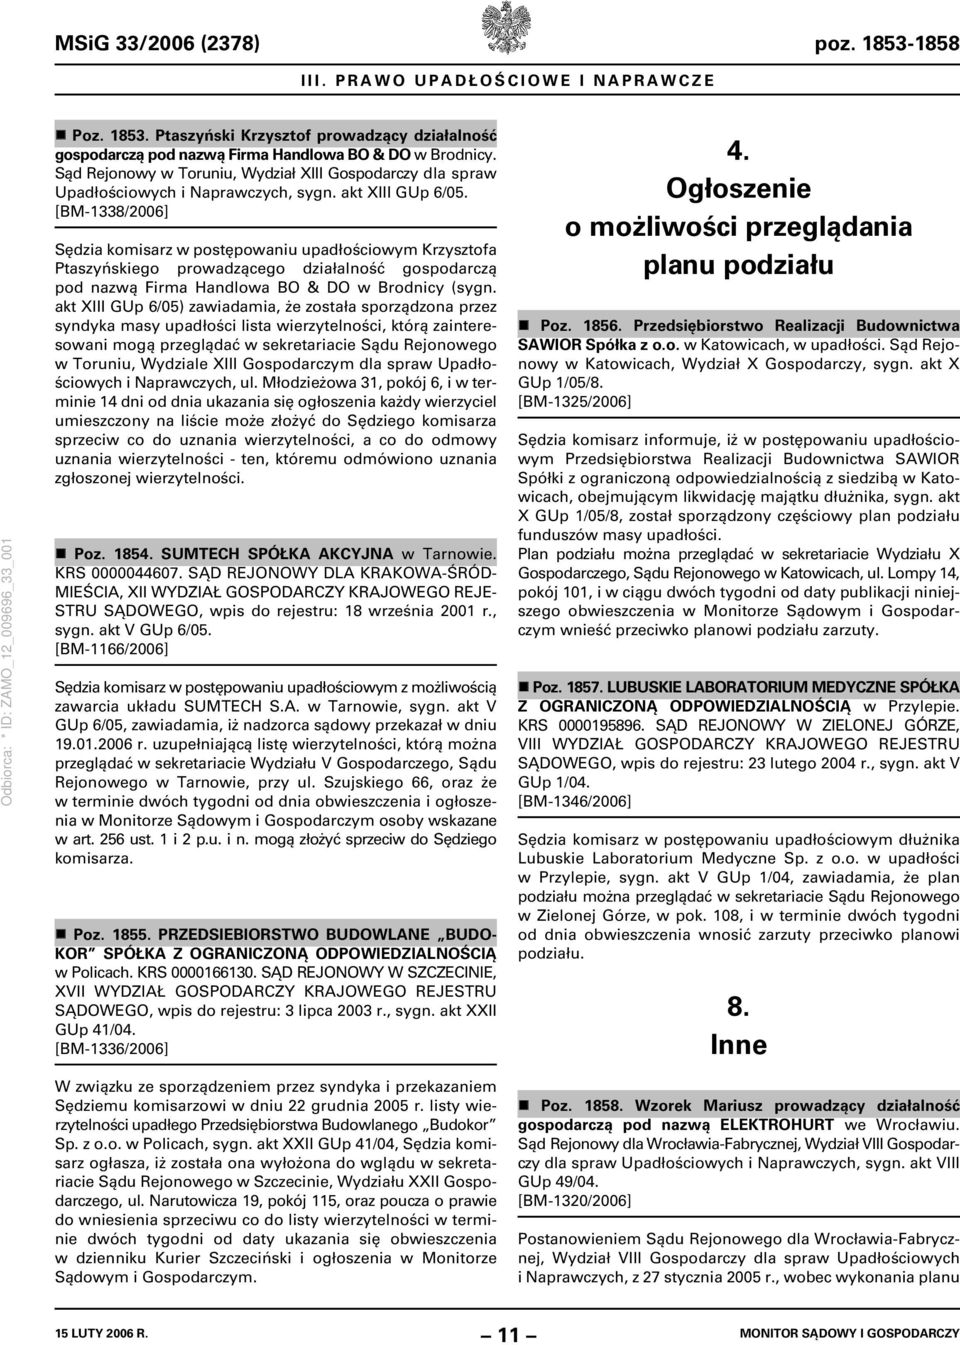 [BM-1338/2006] Sędzia komisarz w postępowaniu upadłościowym Krzysztofa Ptaszyńskiego prowadzącego działalność gospodarczą pod nazwą Firma Handlowa BO & DO w Brodnicy (sygn.